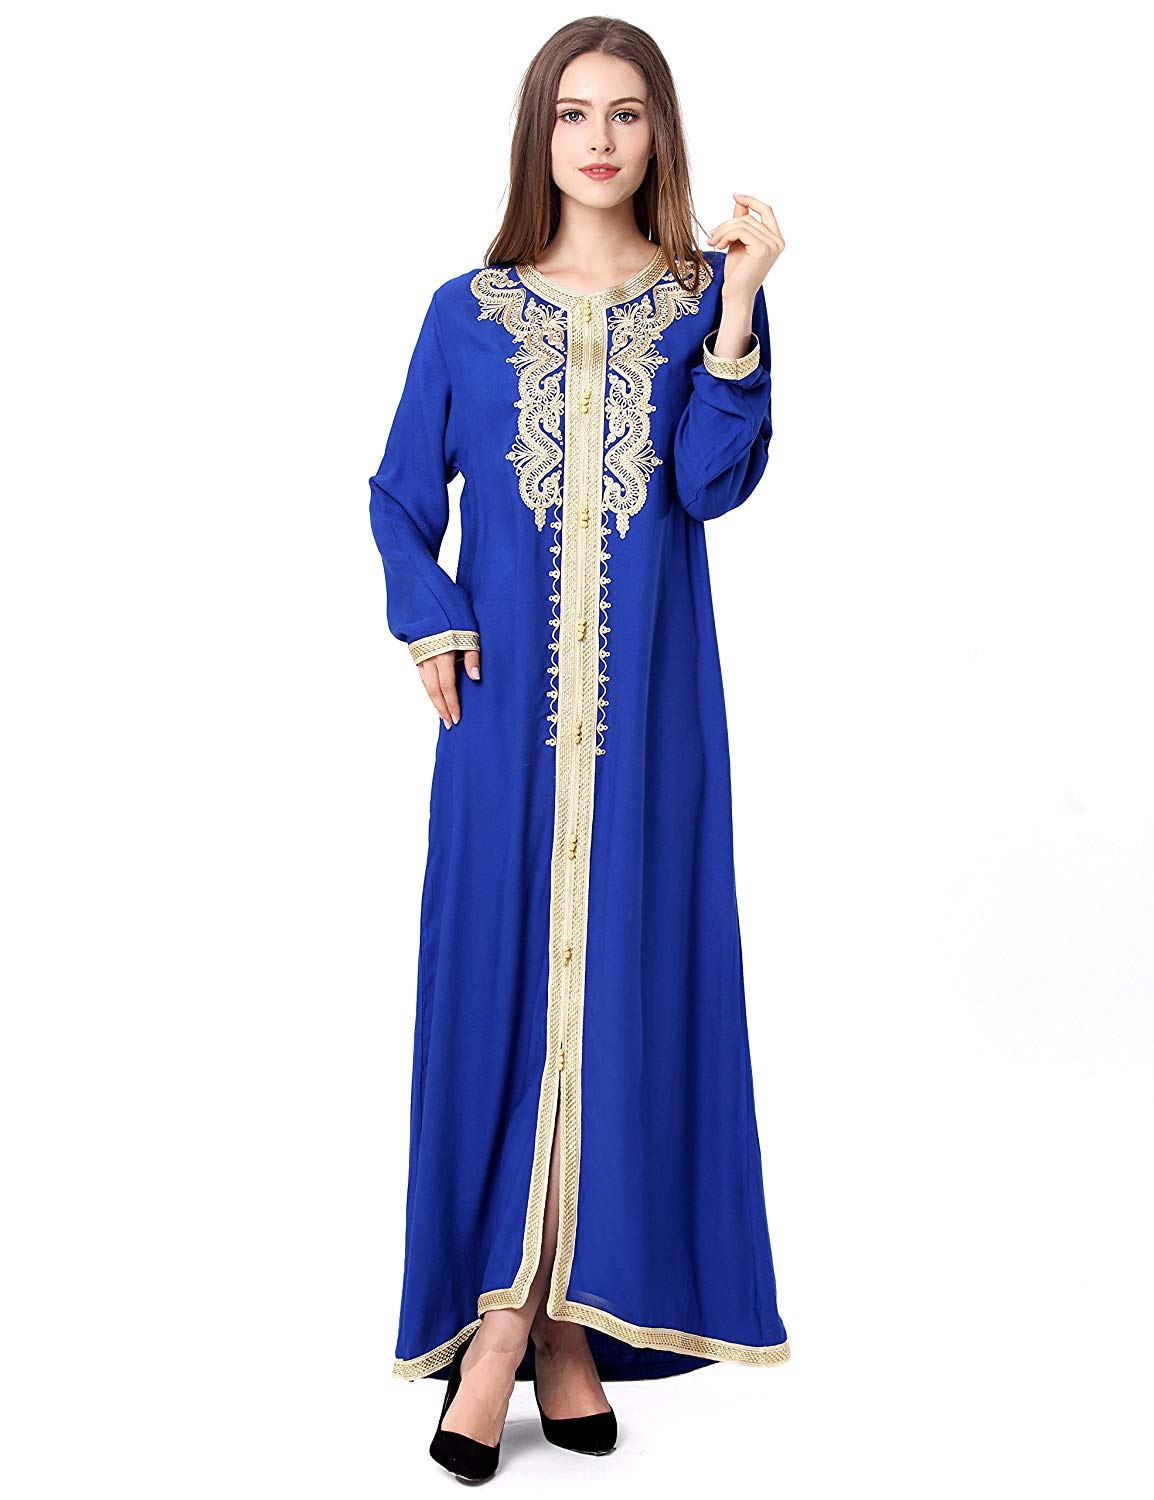 Muslim Dress Dubai Kaftan for Women Long Sleeve Long Dress Abaya